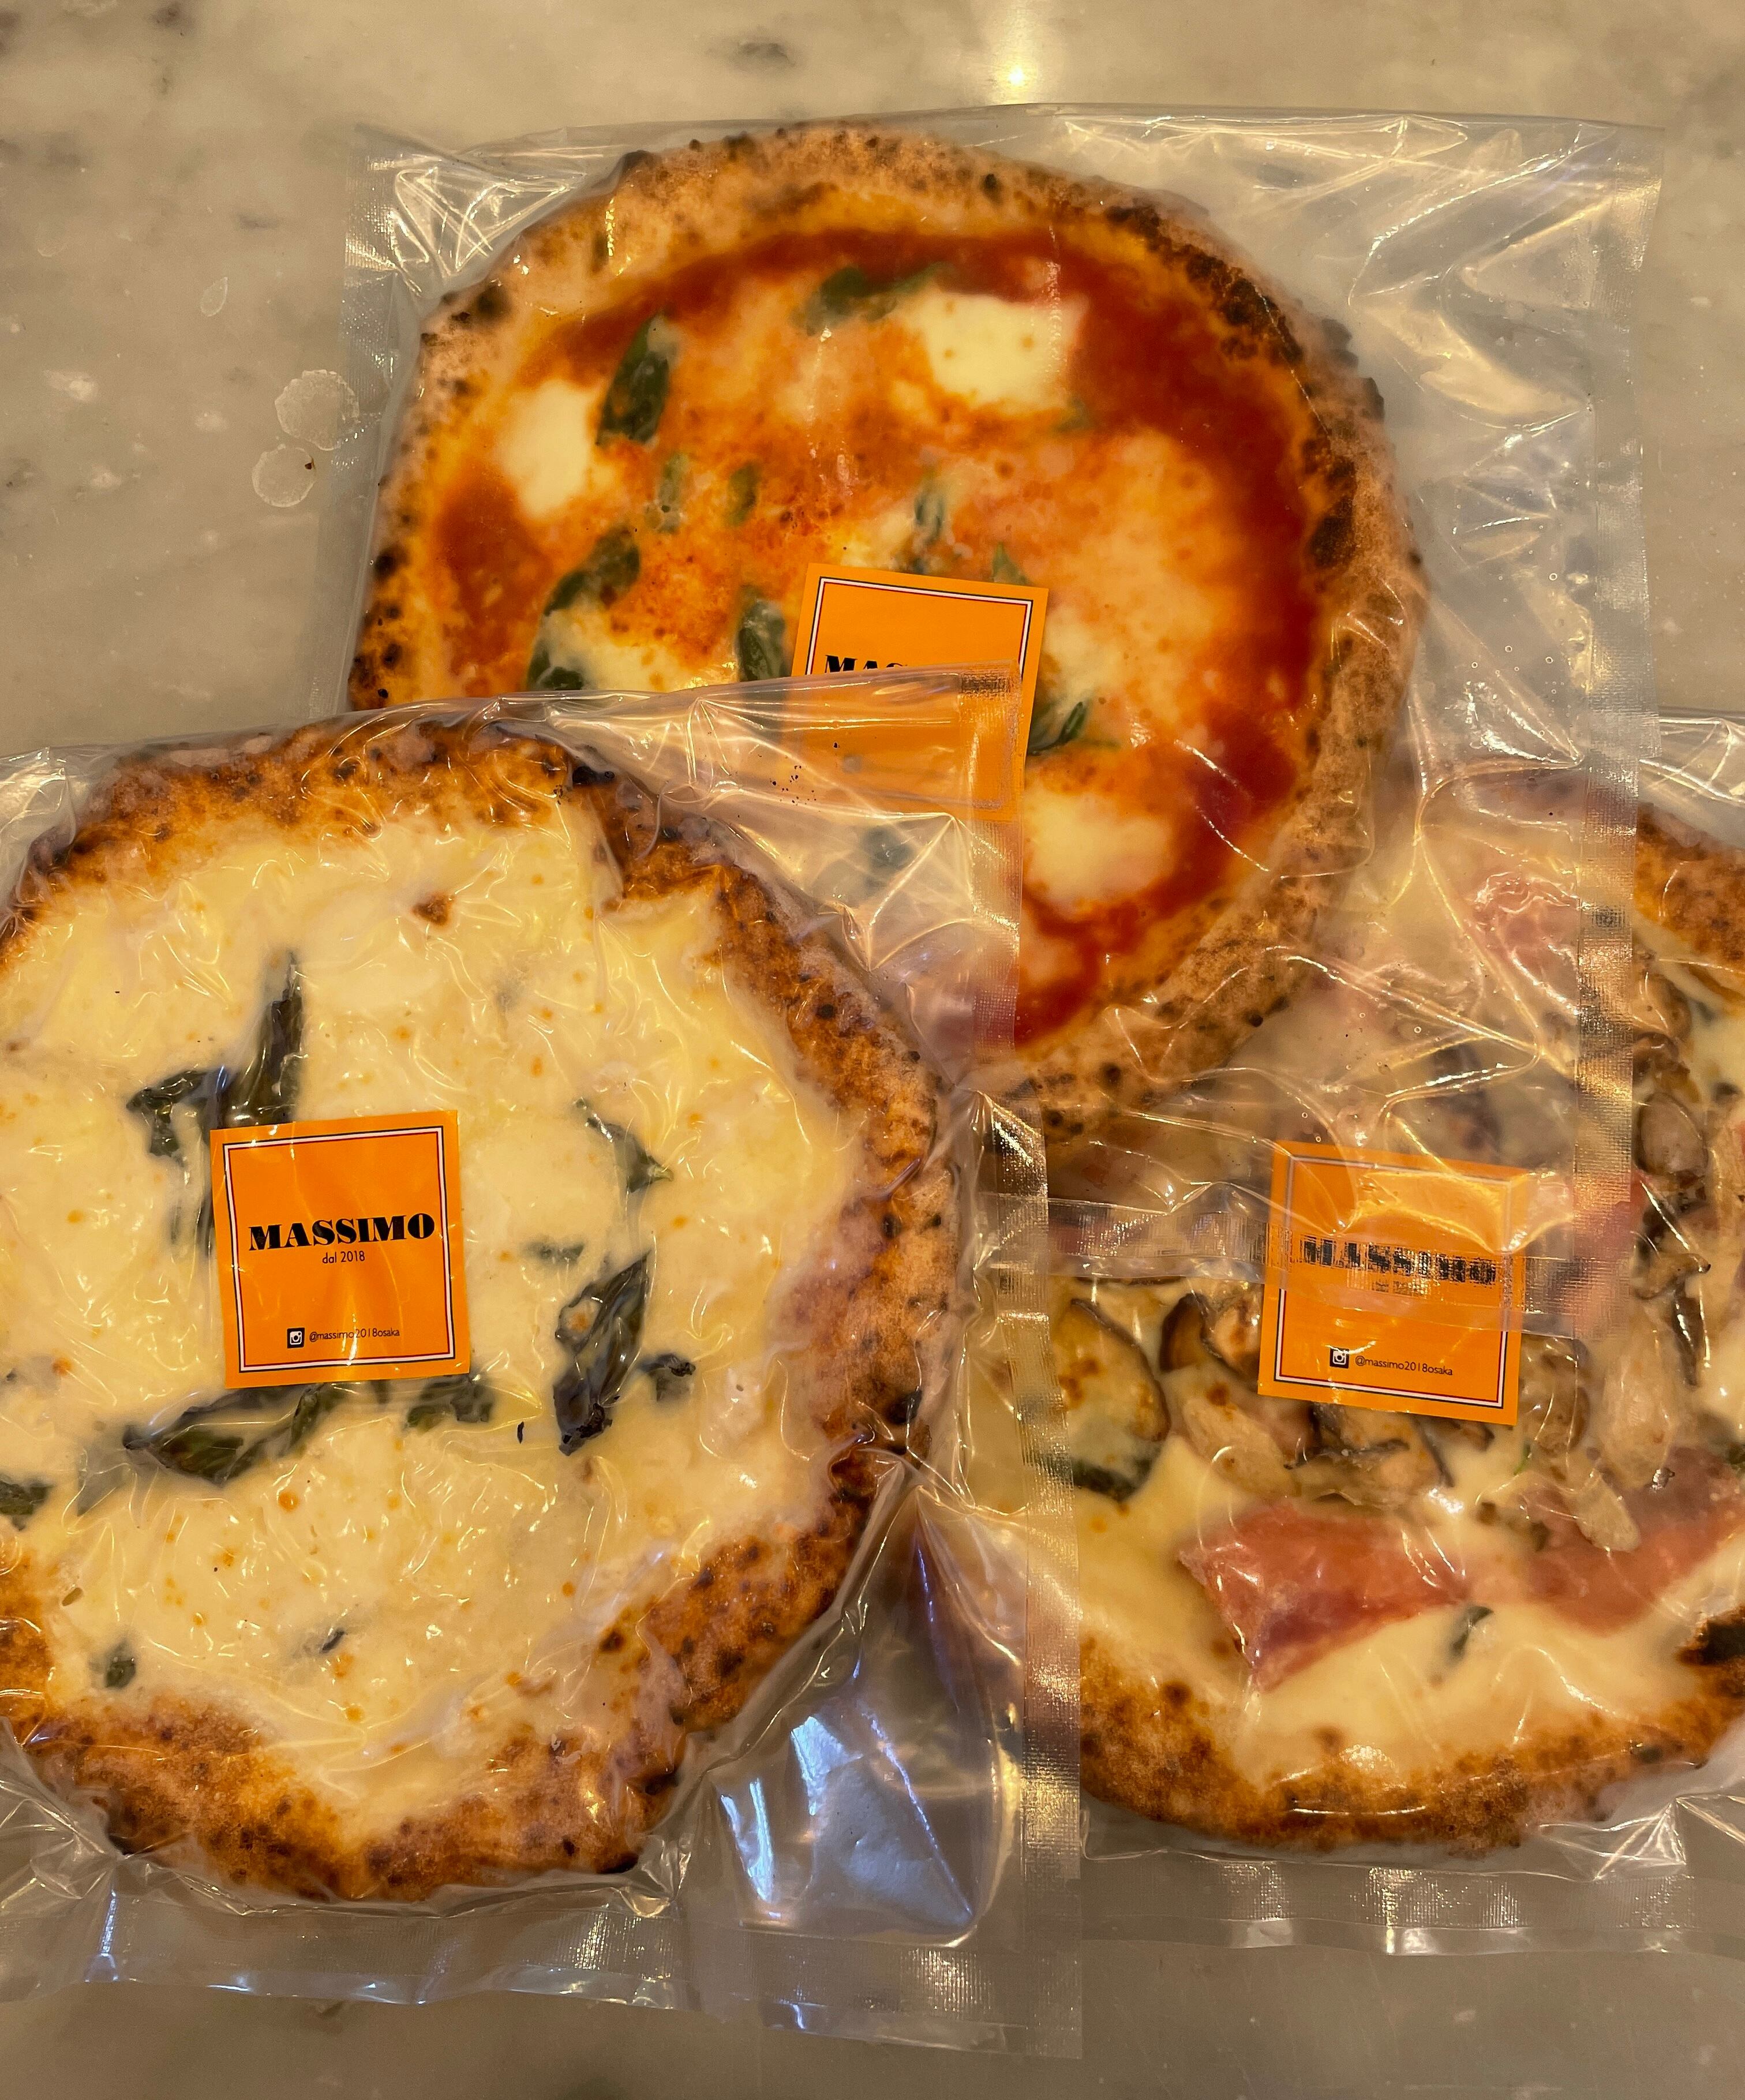 PIZZA　もちもちでジューシーな薪窯焼きピッツァ3枚セット！！送料無料(沖縄、北海道除く)でお得です！！　MASSIMO